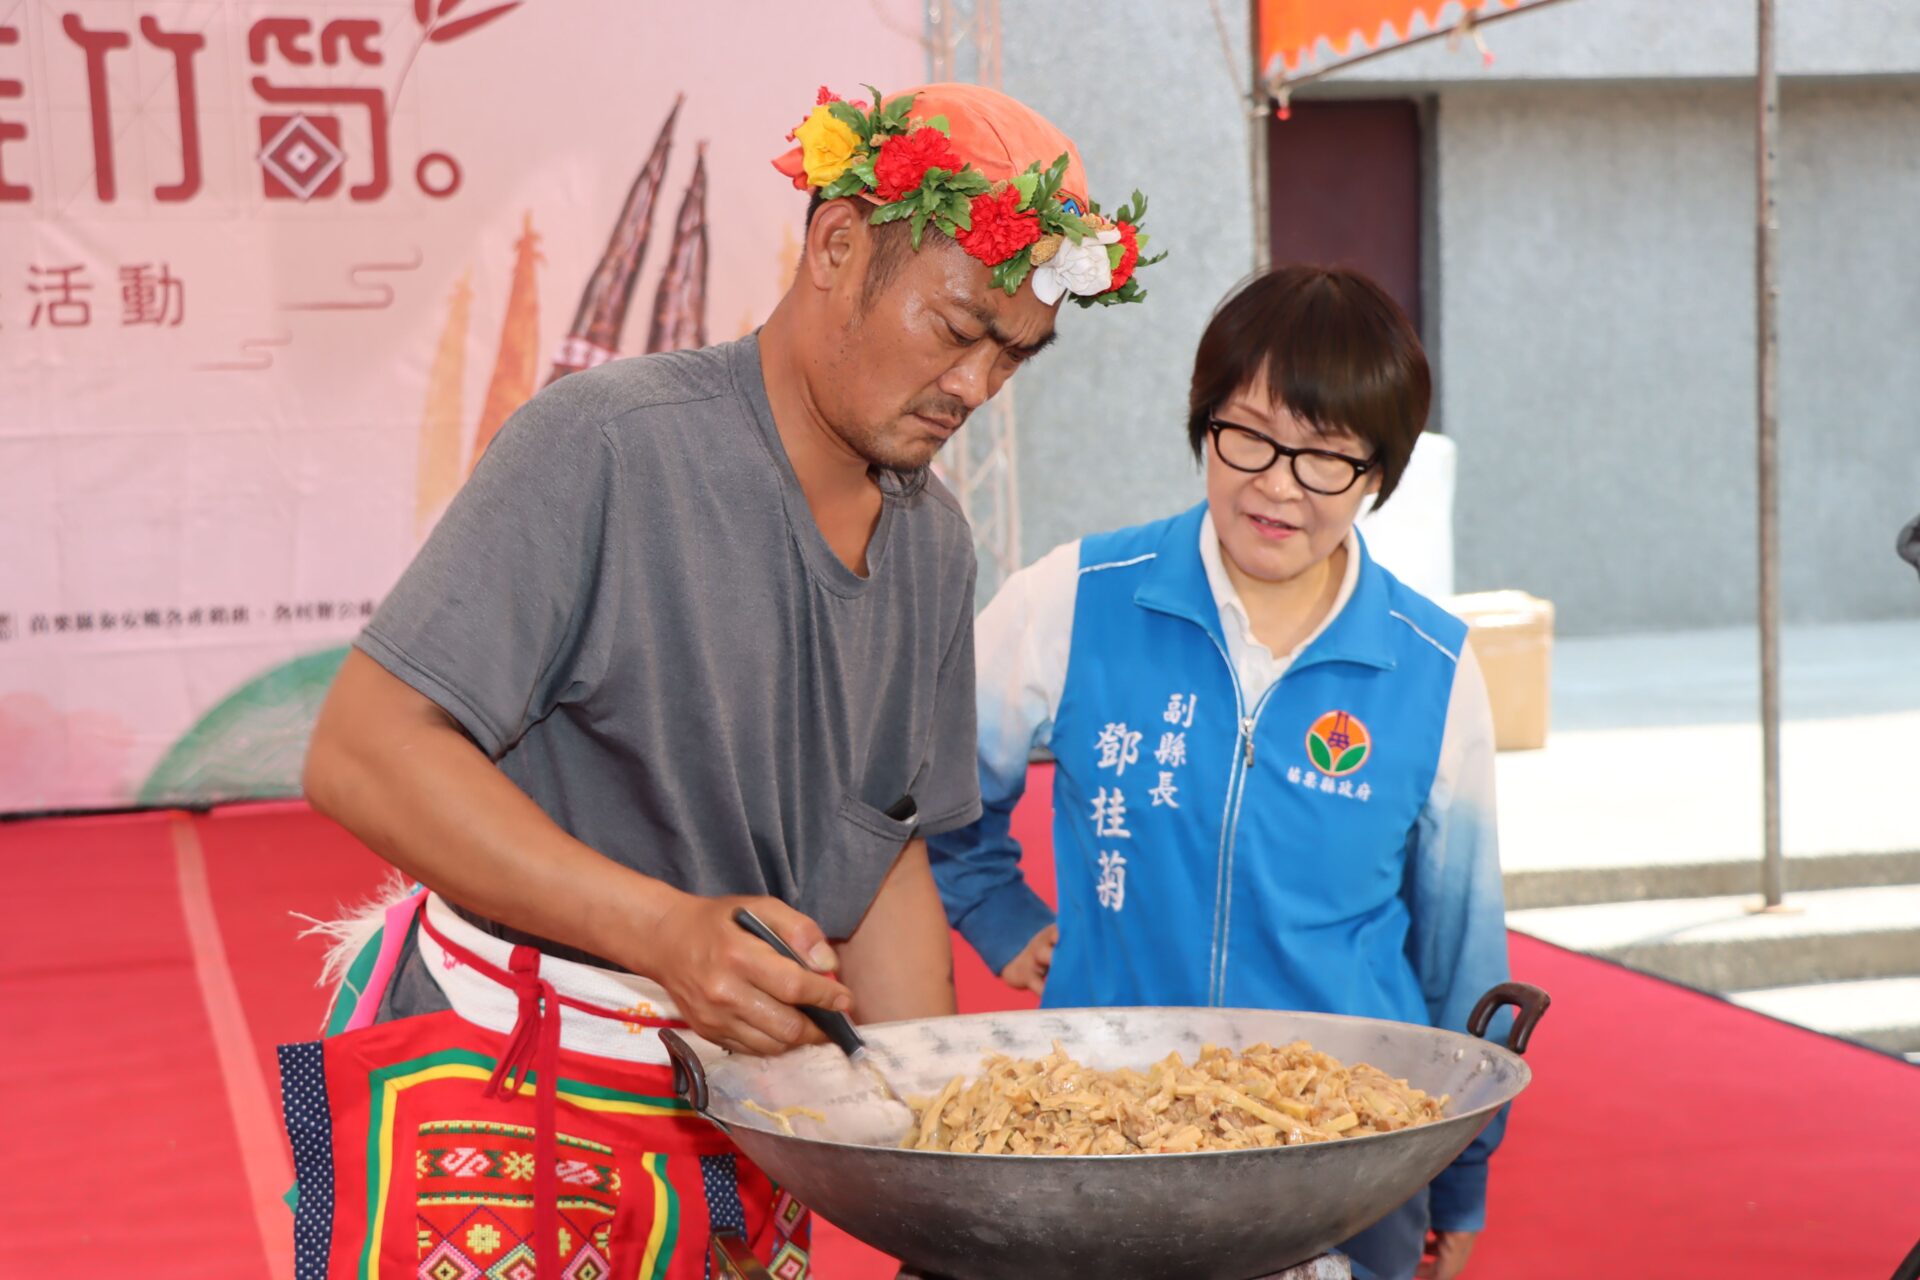 泰安鄉特有農特產A-Li桂竹筍　鮮甜味美的桂竹筍農業推廣活動今登場